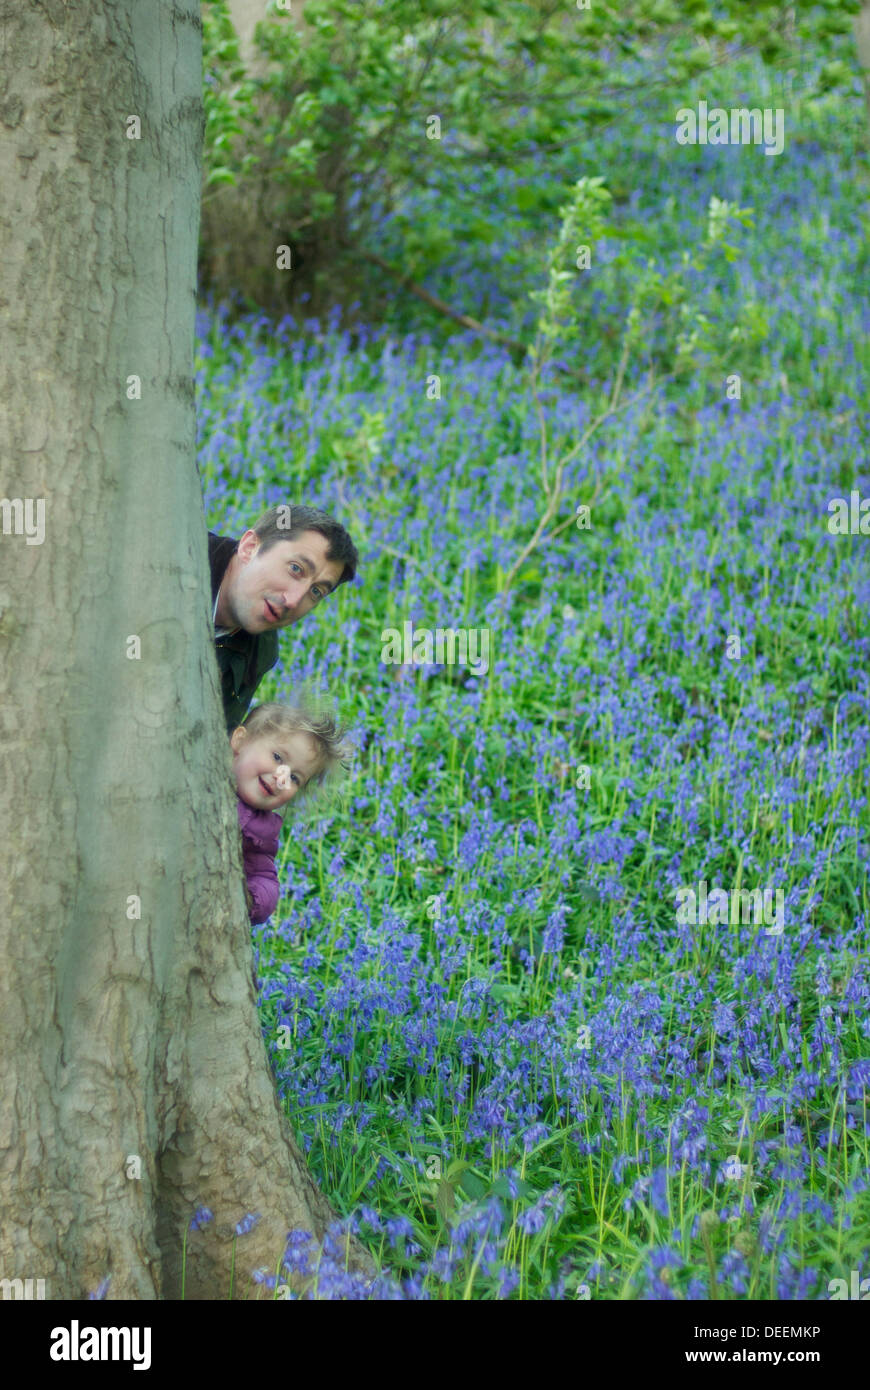 Adultos y niños jugando al escondite detrás de árbol en un bosque lleno de flores azules Foto de stock